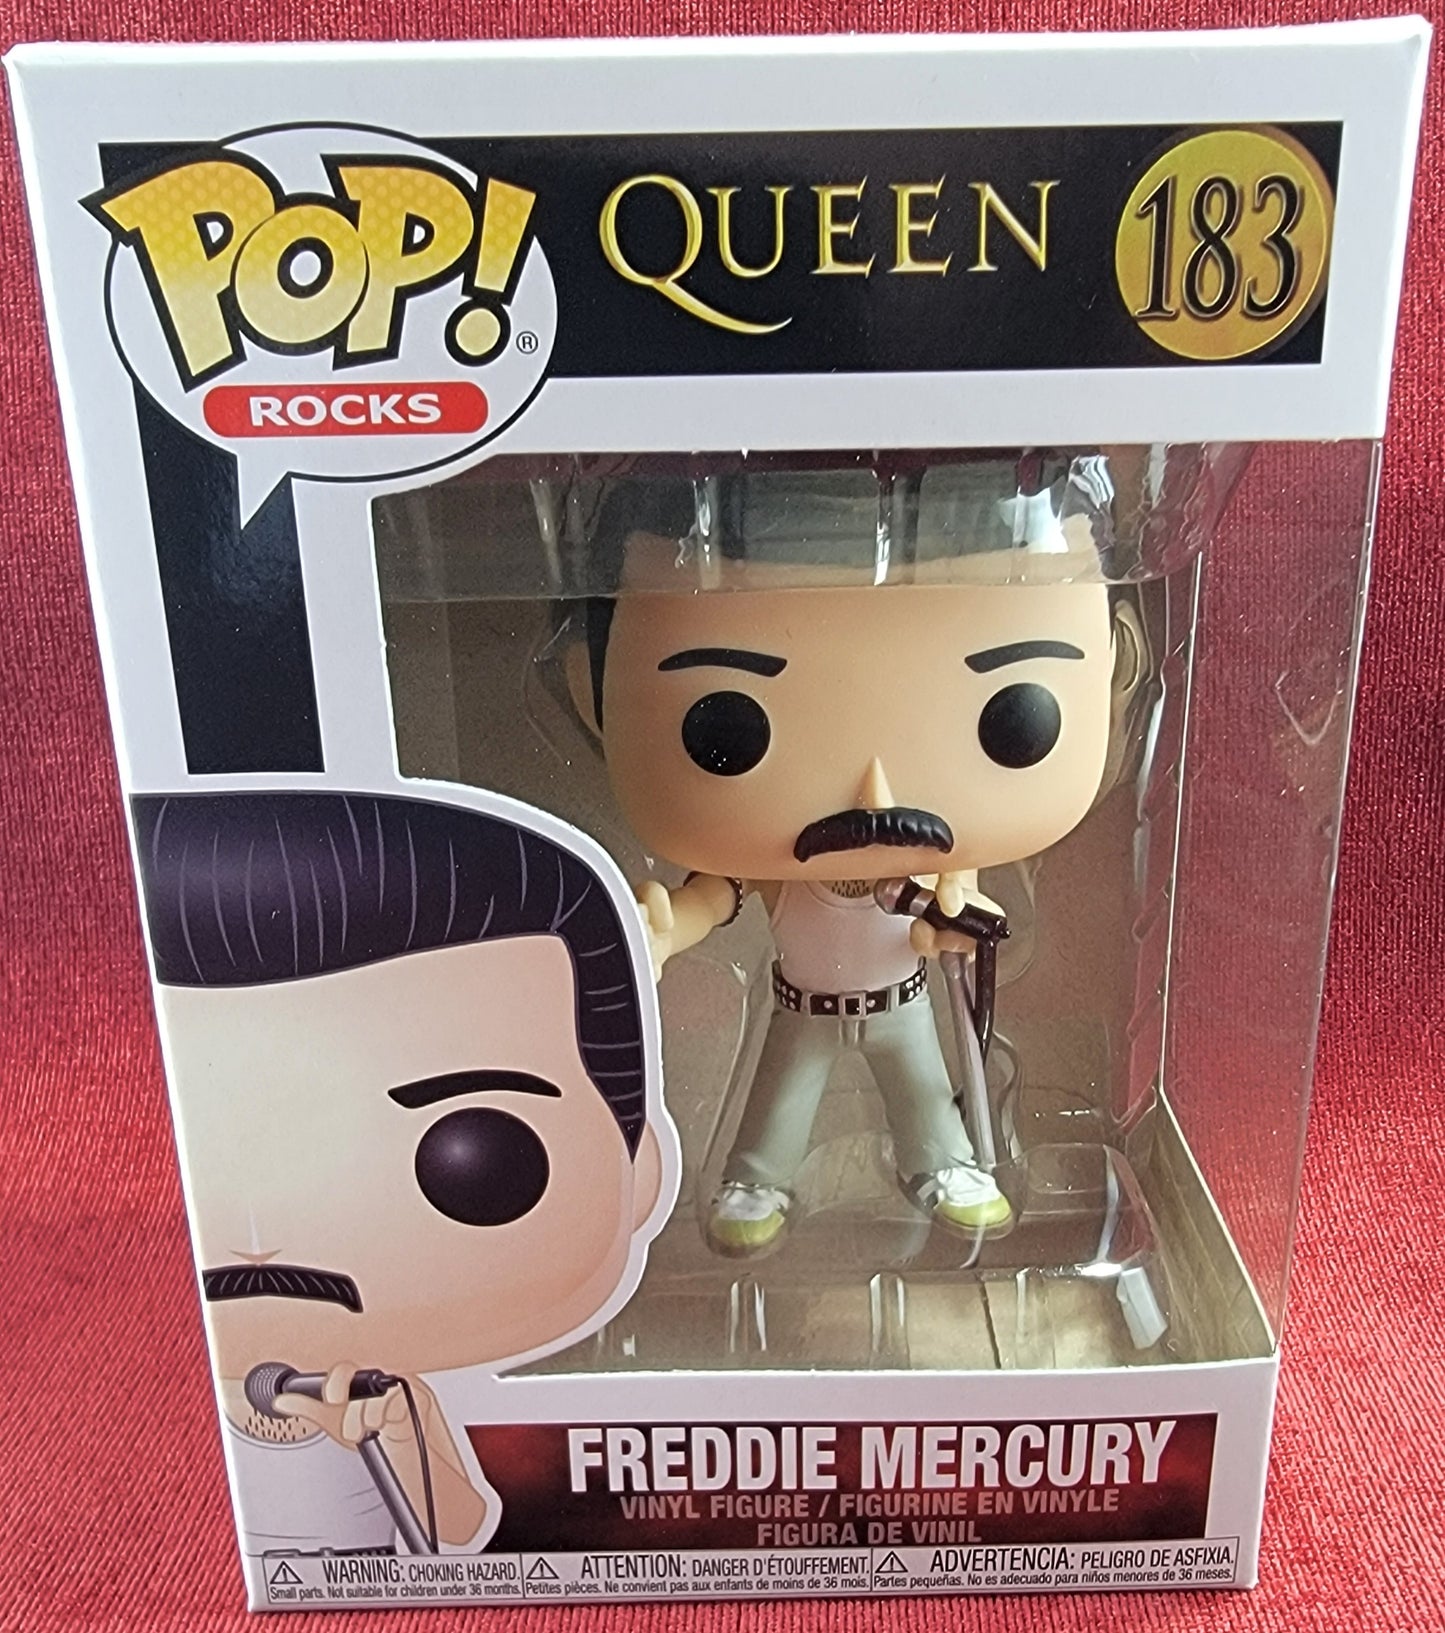 Freddie mercury funko # 183 (nib)
With pop protector